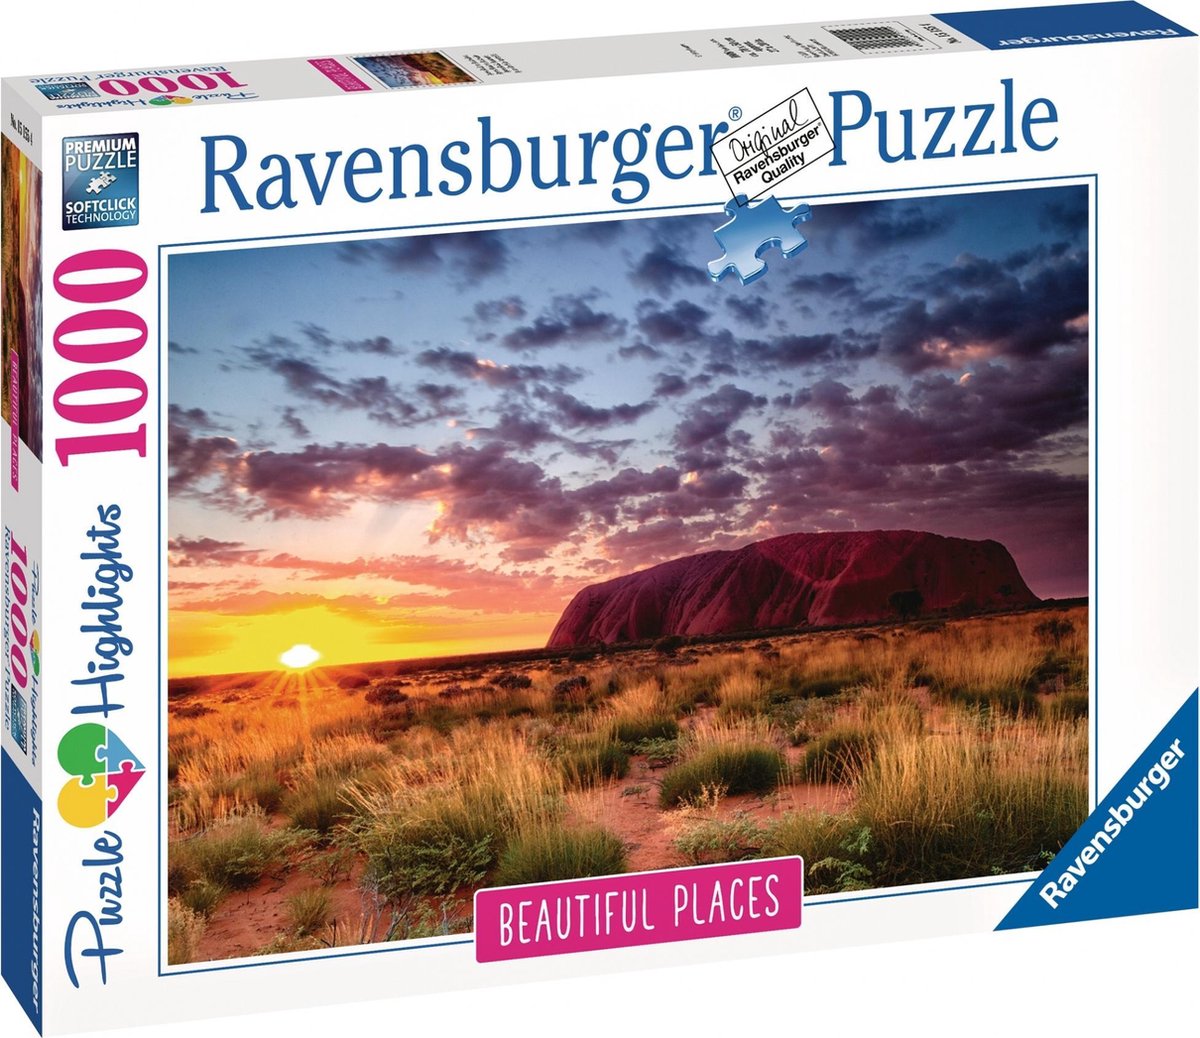 Ravensburger Puzzel Ayers Rock Australië - 1000 Stukjes